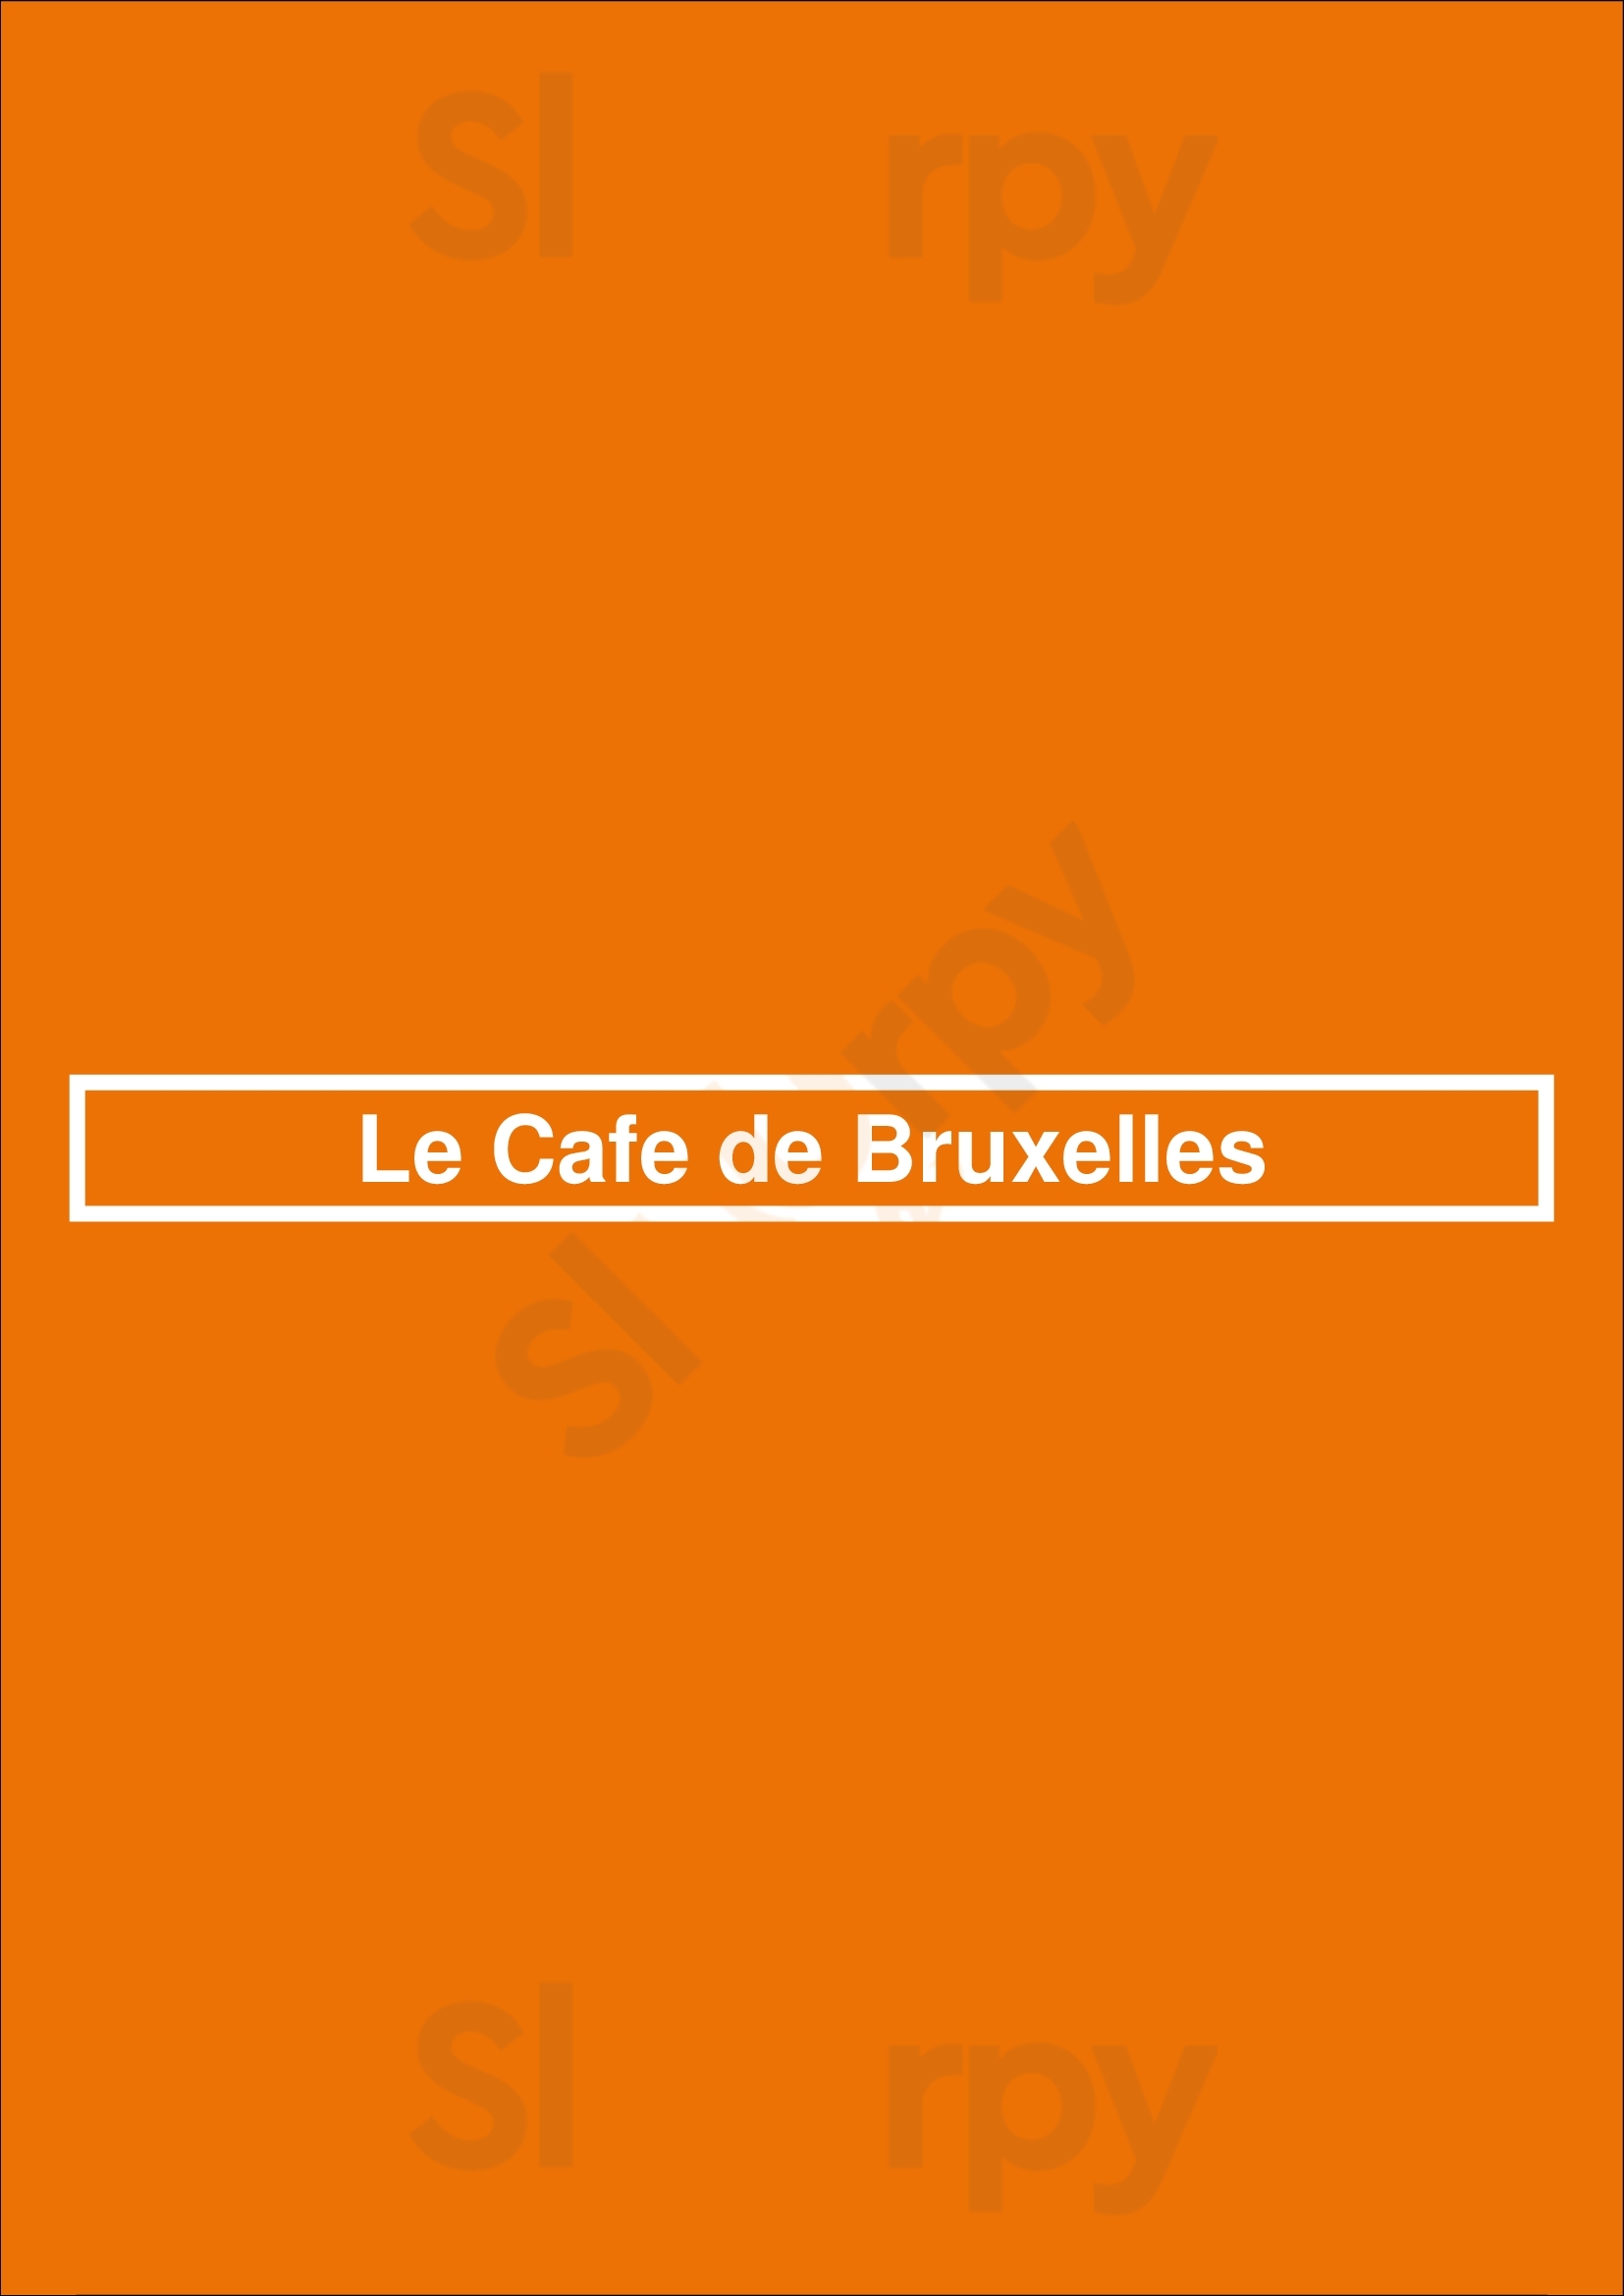 Le Cafe De Bruxelles Bruxelles Menu - 1